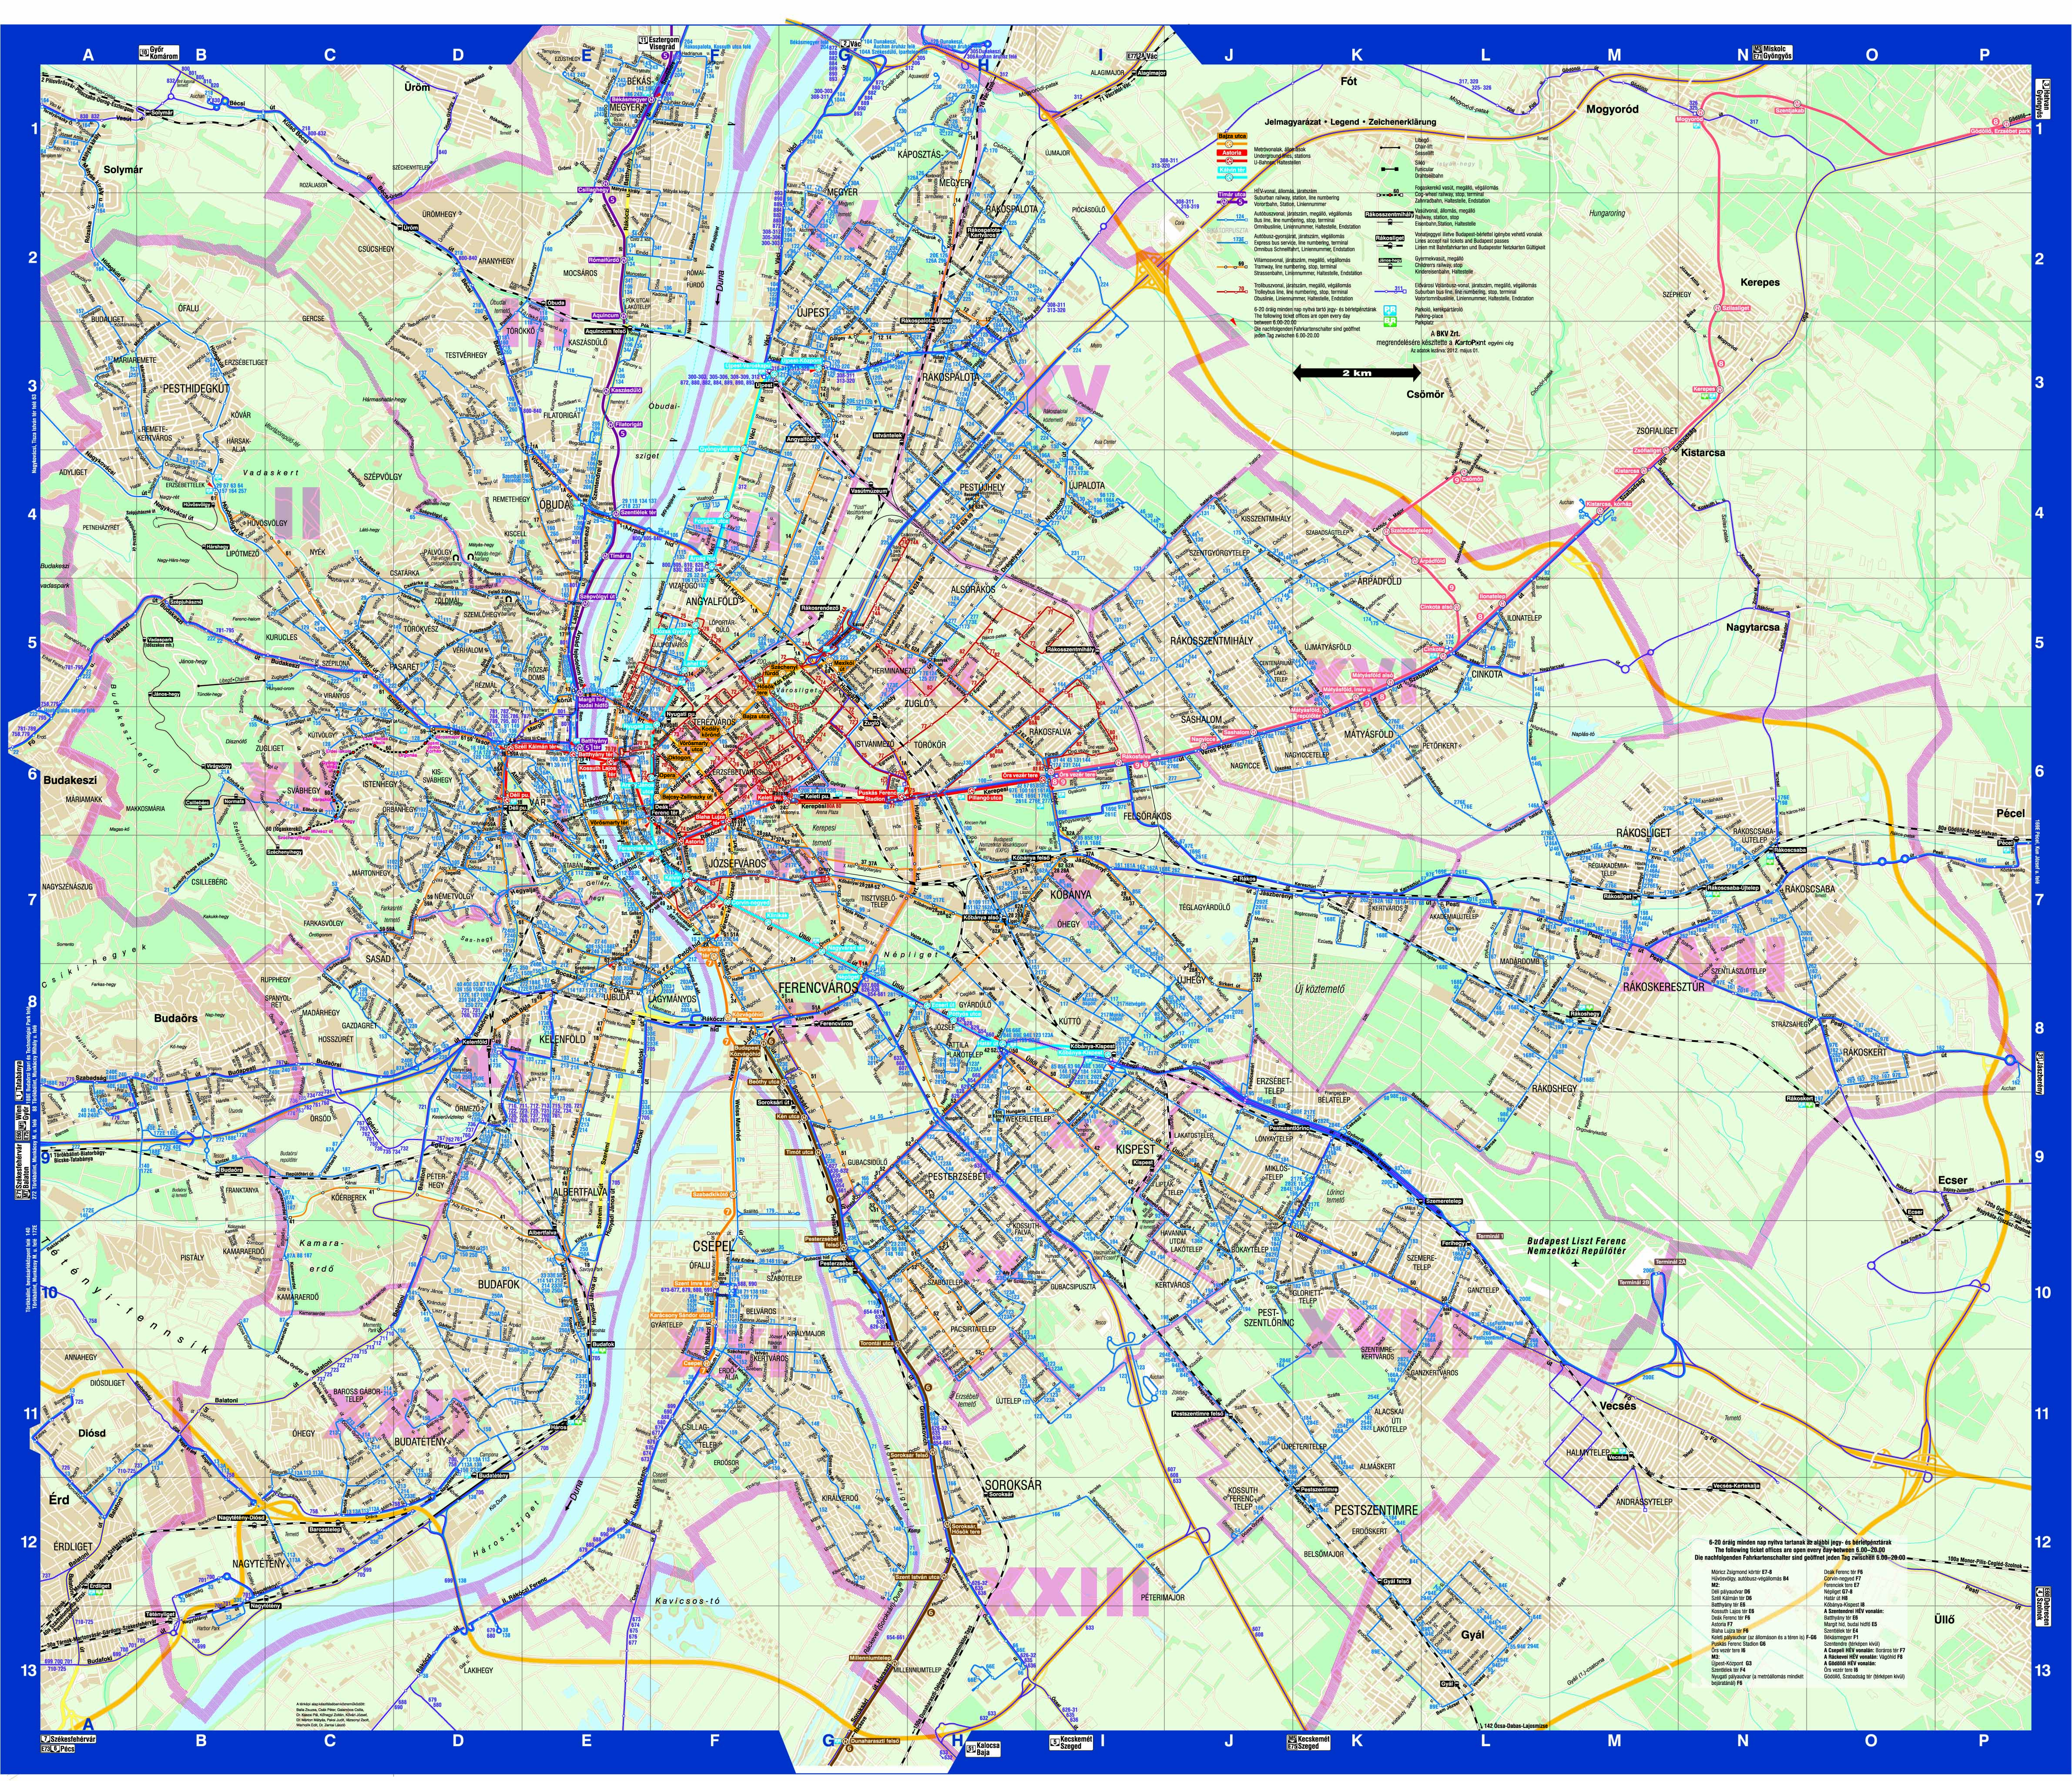 bp térkép bkv járatokkal Budapest közösségi közlekekedésének utasterheltsége bp térkép bkv járatokkal